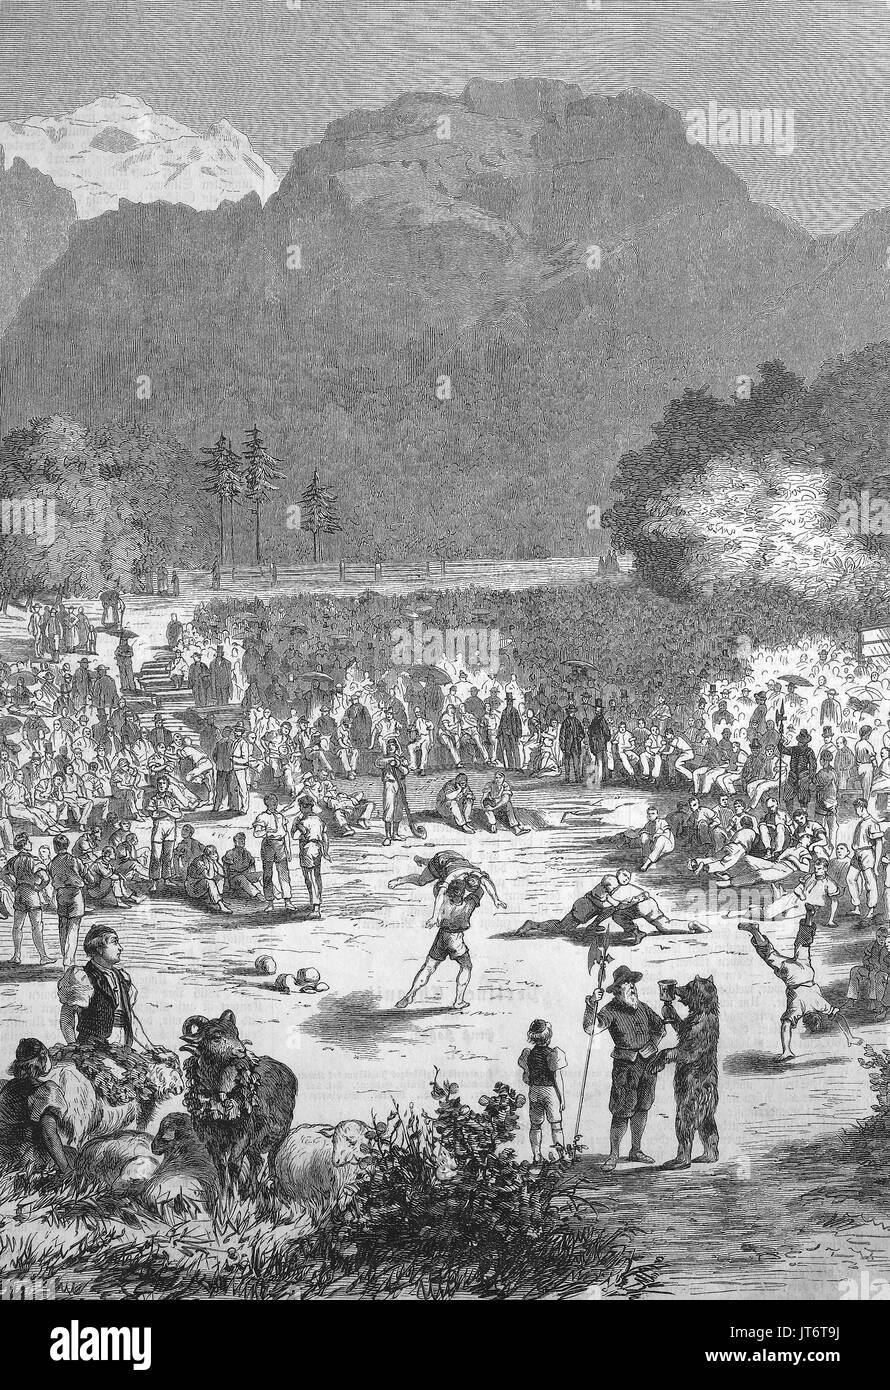 Un Schwingerfest à Interlaken, Suisse, Schwingen également connu sous le nom de Swiss wrestling et Hoselupf, culottes-levage, est un style de lutte folk originaire de Suisse, l'amélioration numérique reproduction d'une image publié entre 1880 - 1885 Banque D'Images